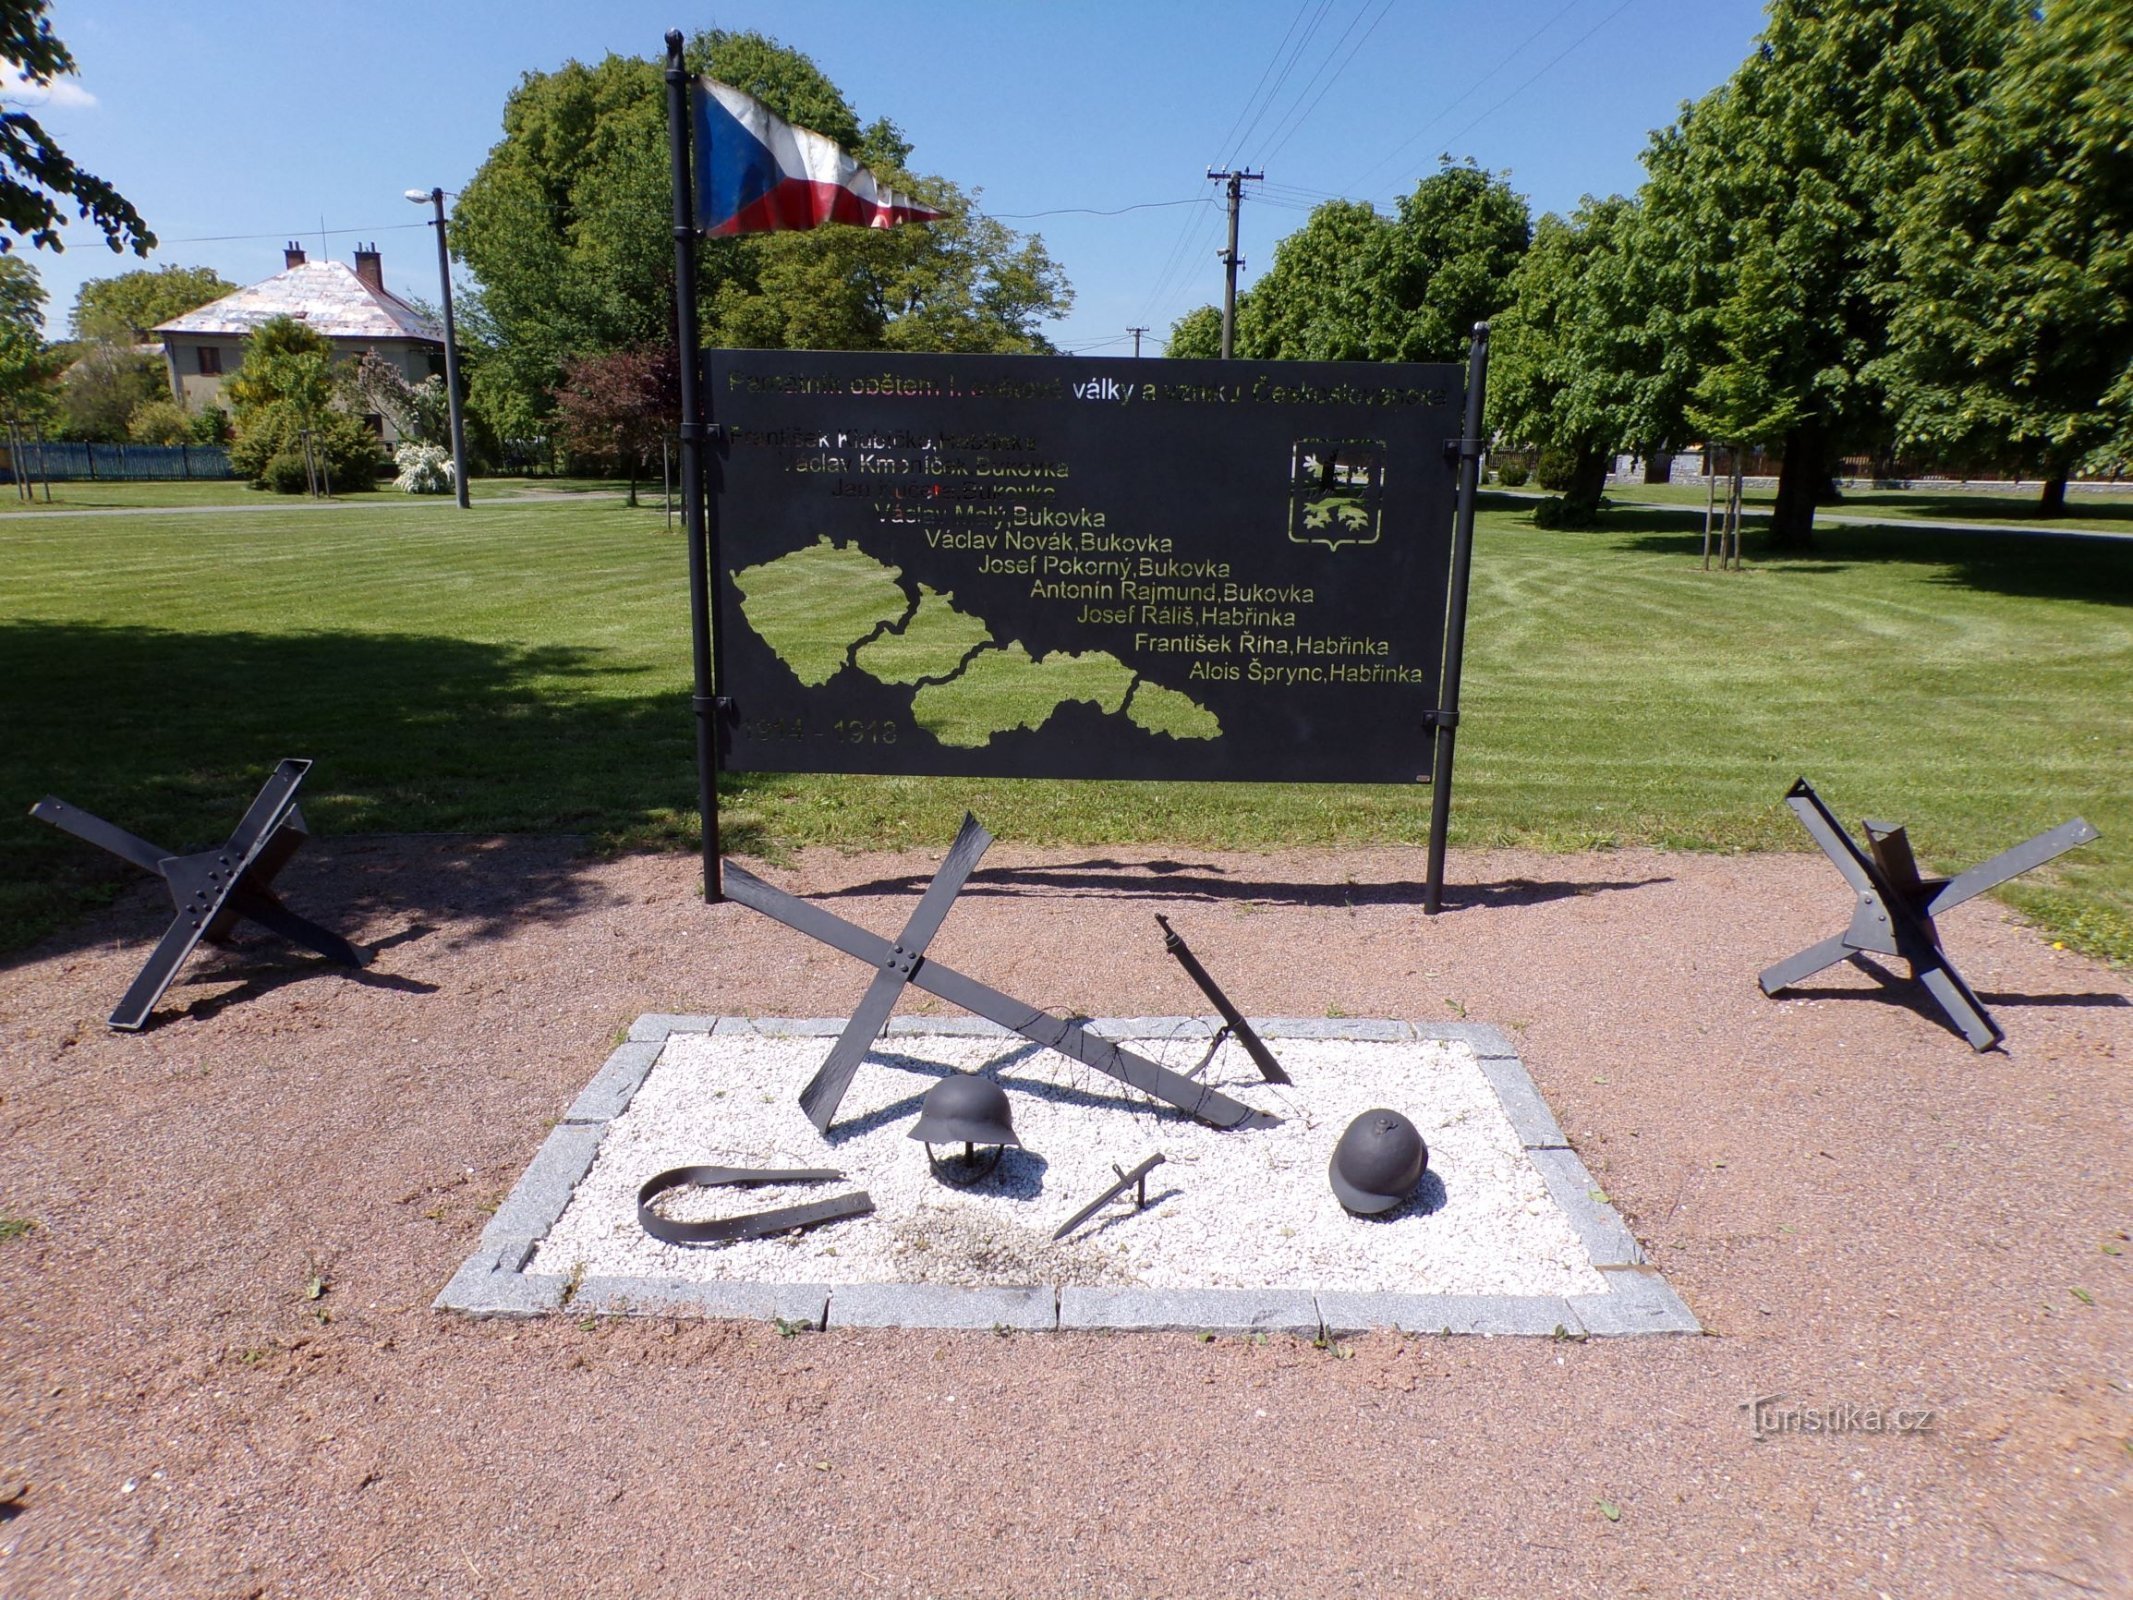 Monumento a las víctimas de la Primera Guerra Mundial y la creación de Checoslovaquia (Habřinka, 1 de junio de 3.6.2021)